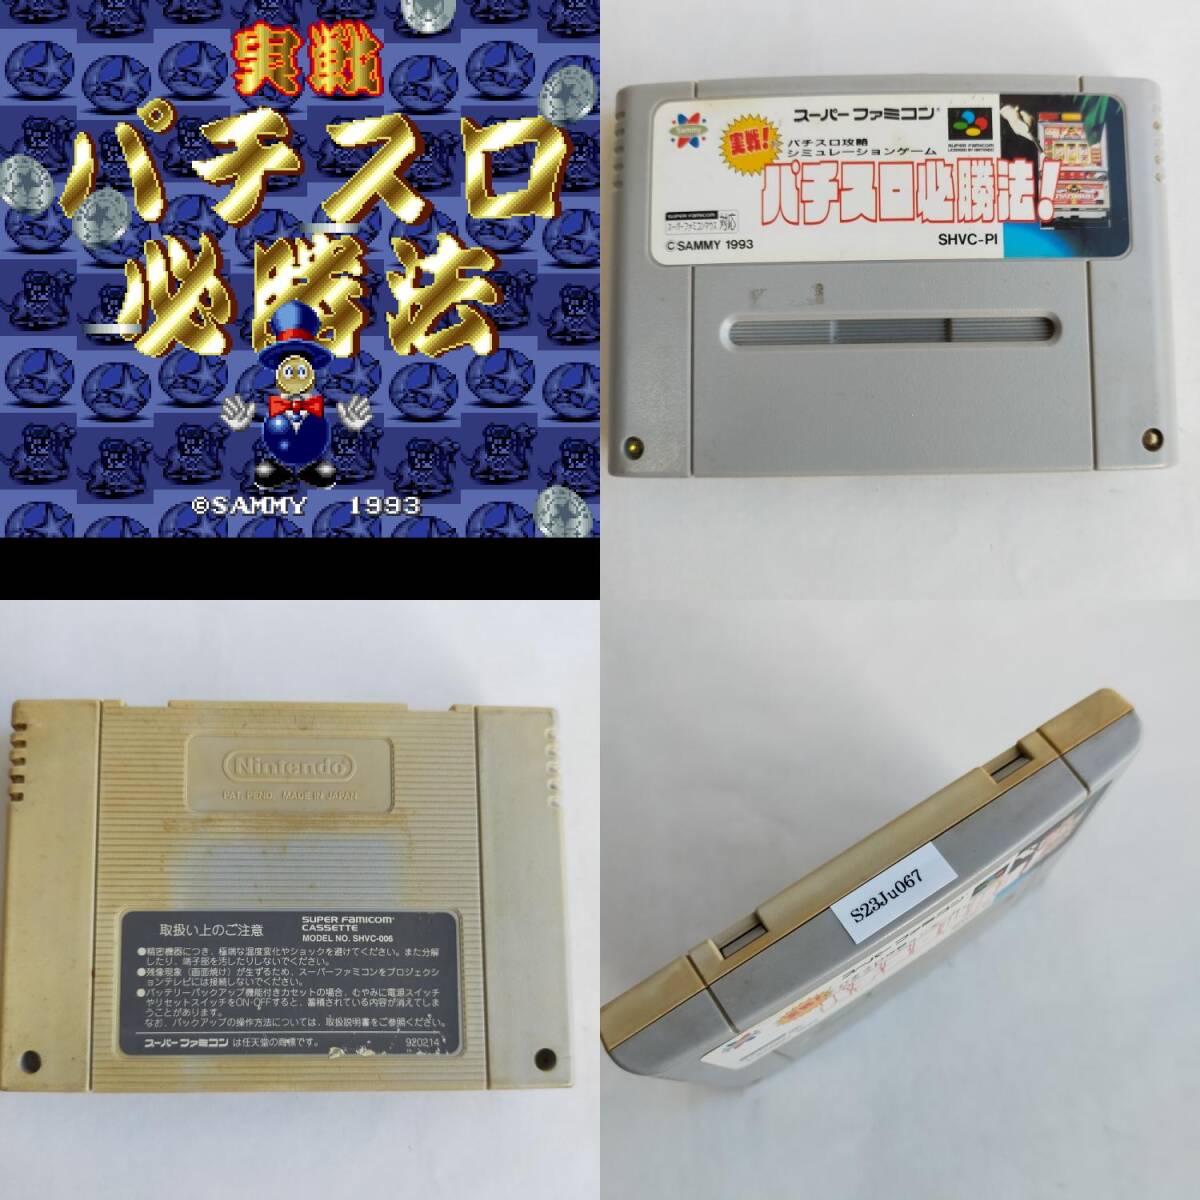  реальный битва игровой автомат обязательно . закон Super Famicom рабочее состояние подтверждено * терминал чистка settled [SFC6685_2307067]